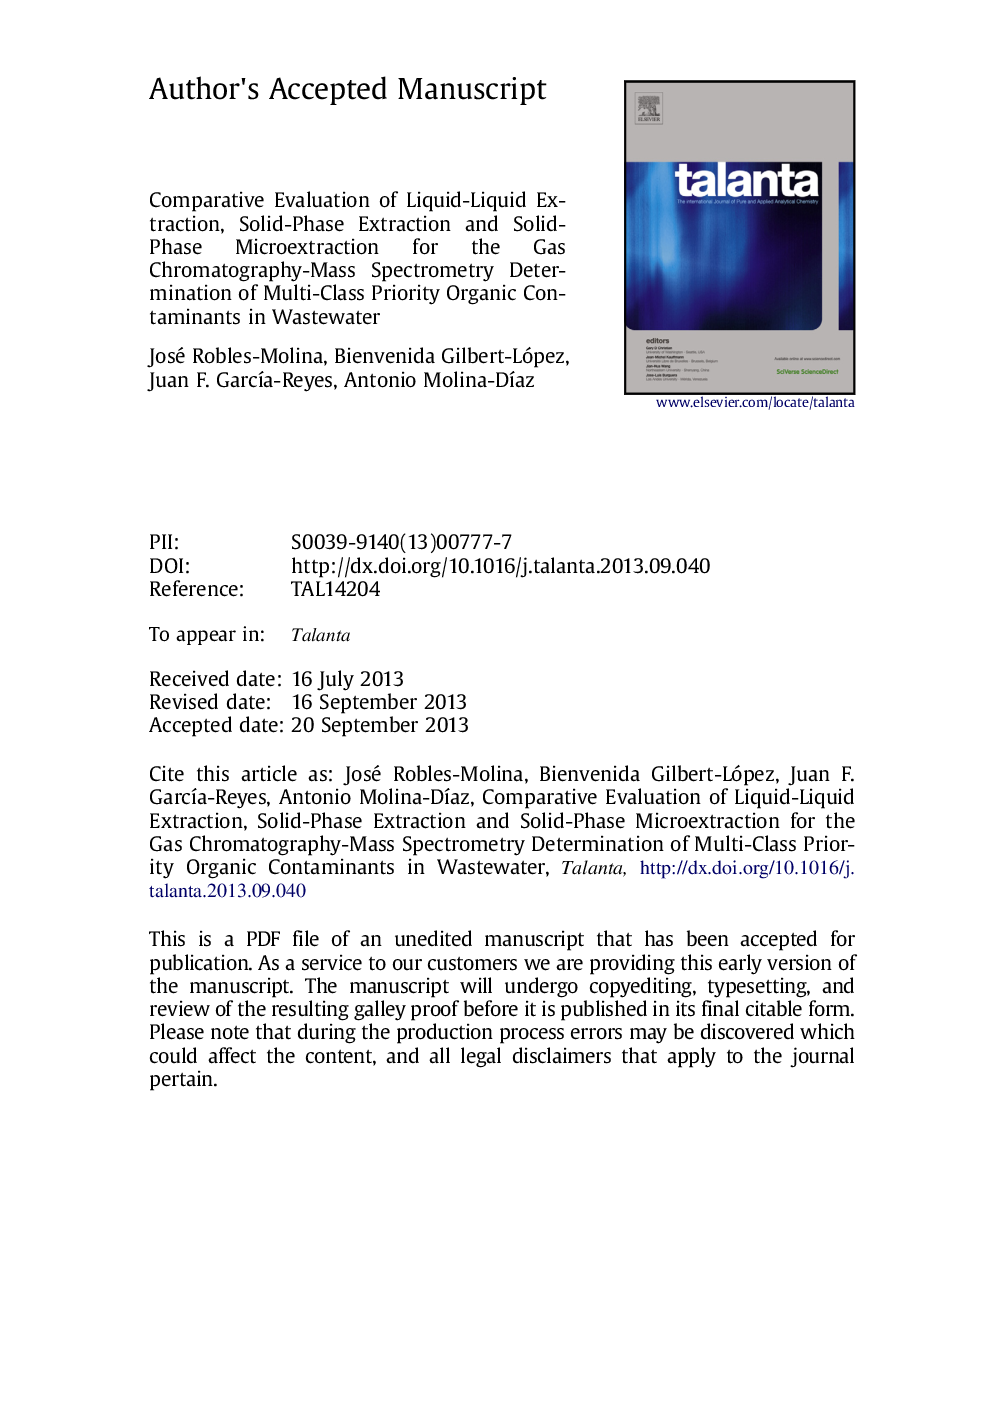 ارزیابی مقایسه ای از استخراج مایع مایع، استخراج جامد فاز و میکرو اکستراکتیو جامد فاز برای تعیین طیف سنجی جرم کروماتوگرافی گاز از آلاینده های آلی آلاینده های چندگانه در فاضلاب 